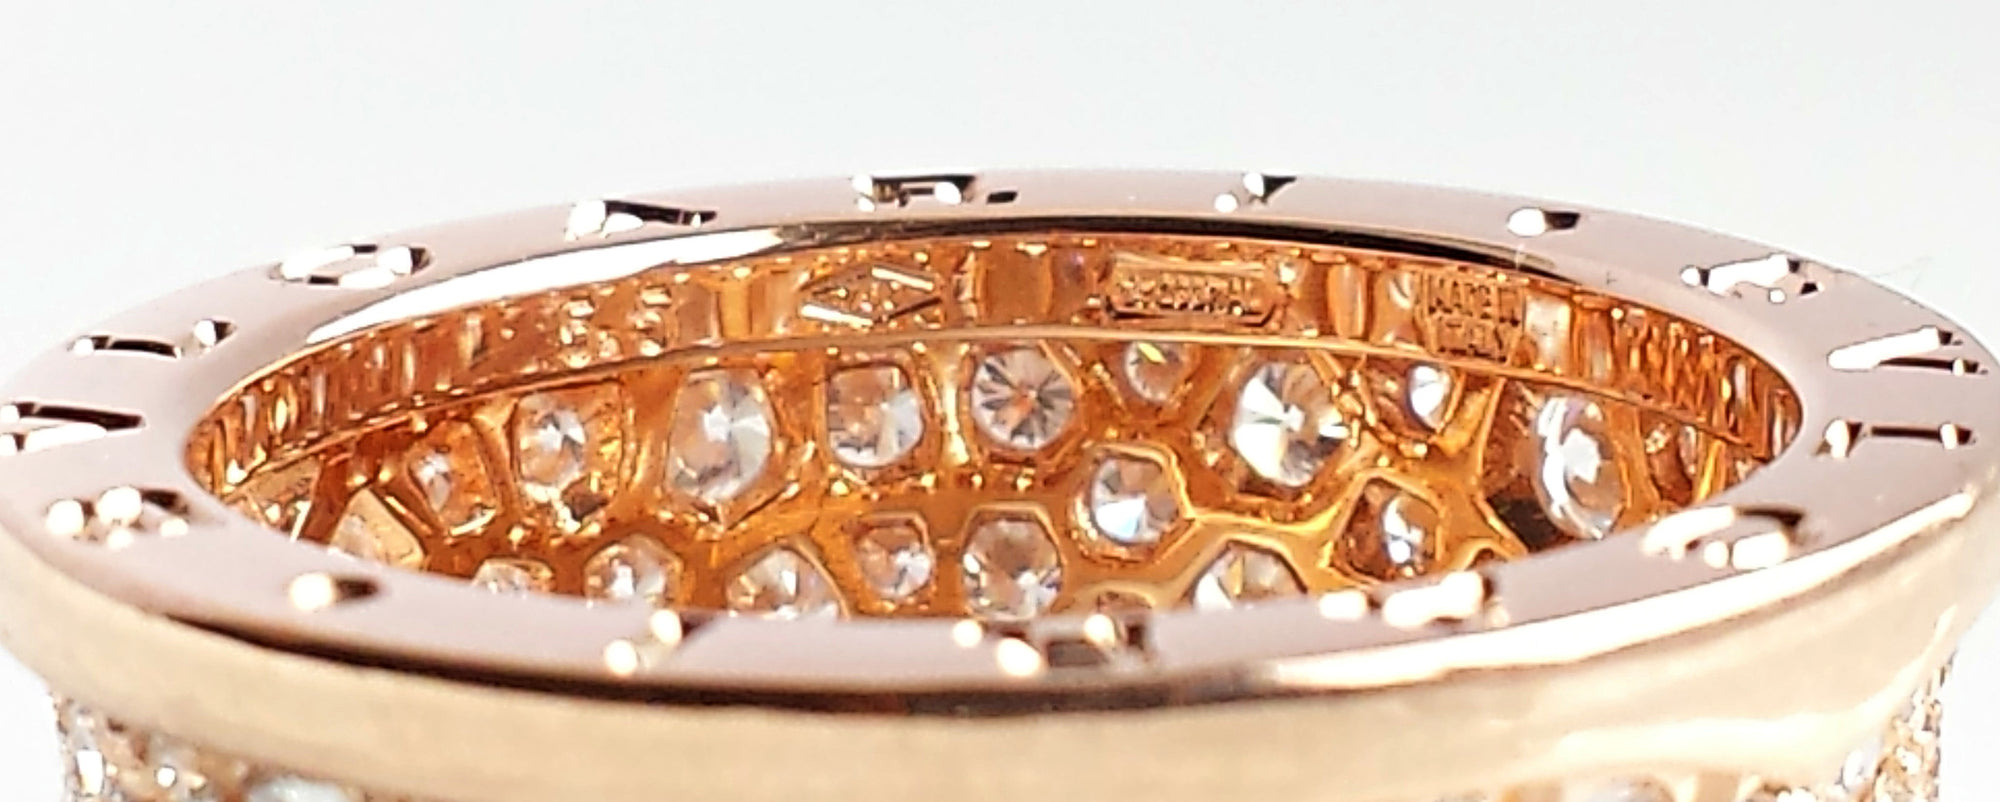 Bulgari B.Zero1 2.3ct Pavé Set Diamond & 18K Rose Gold Ring, Size 55